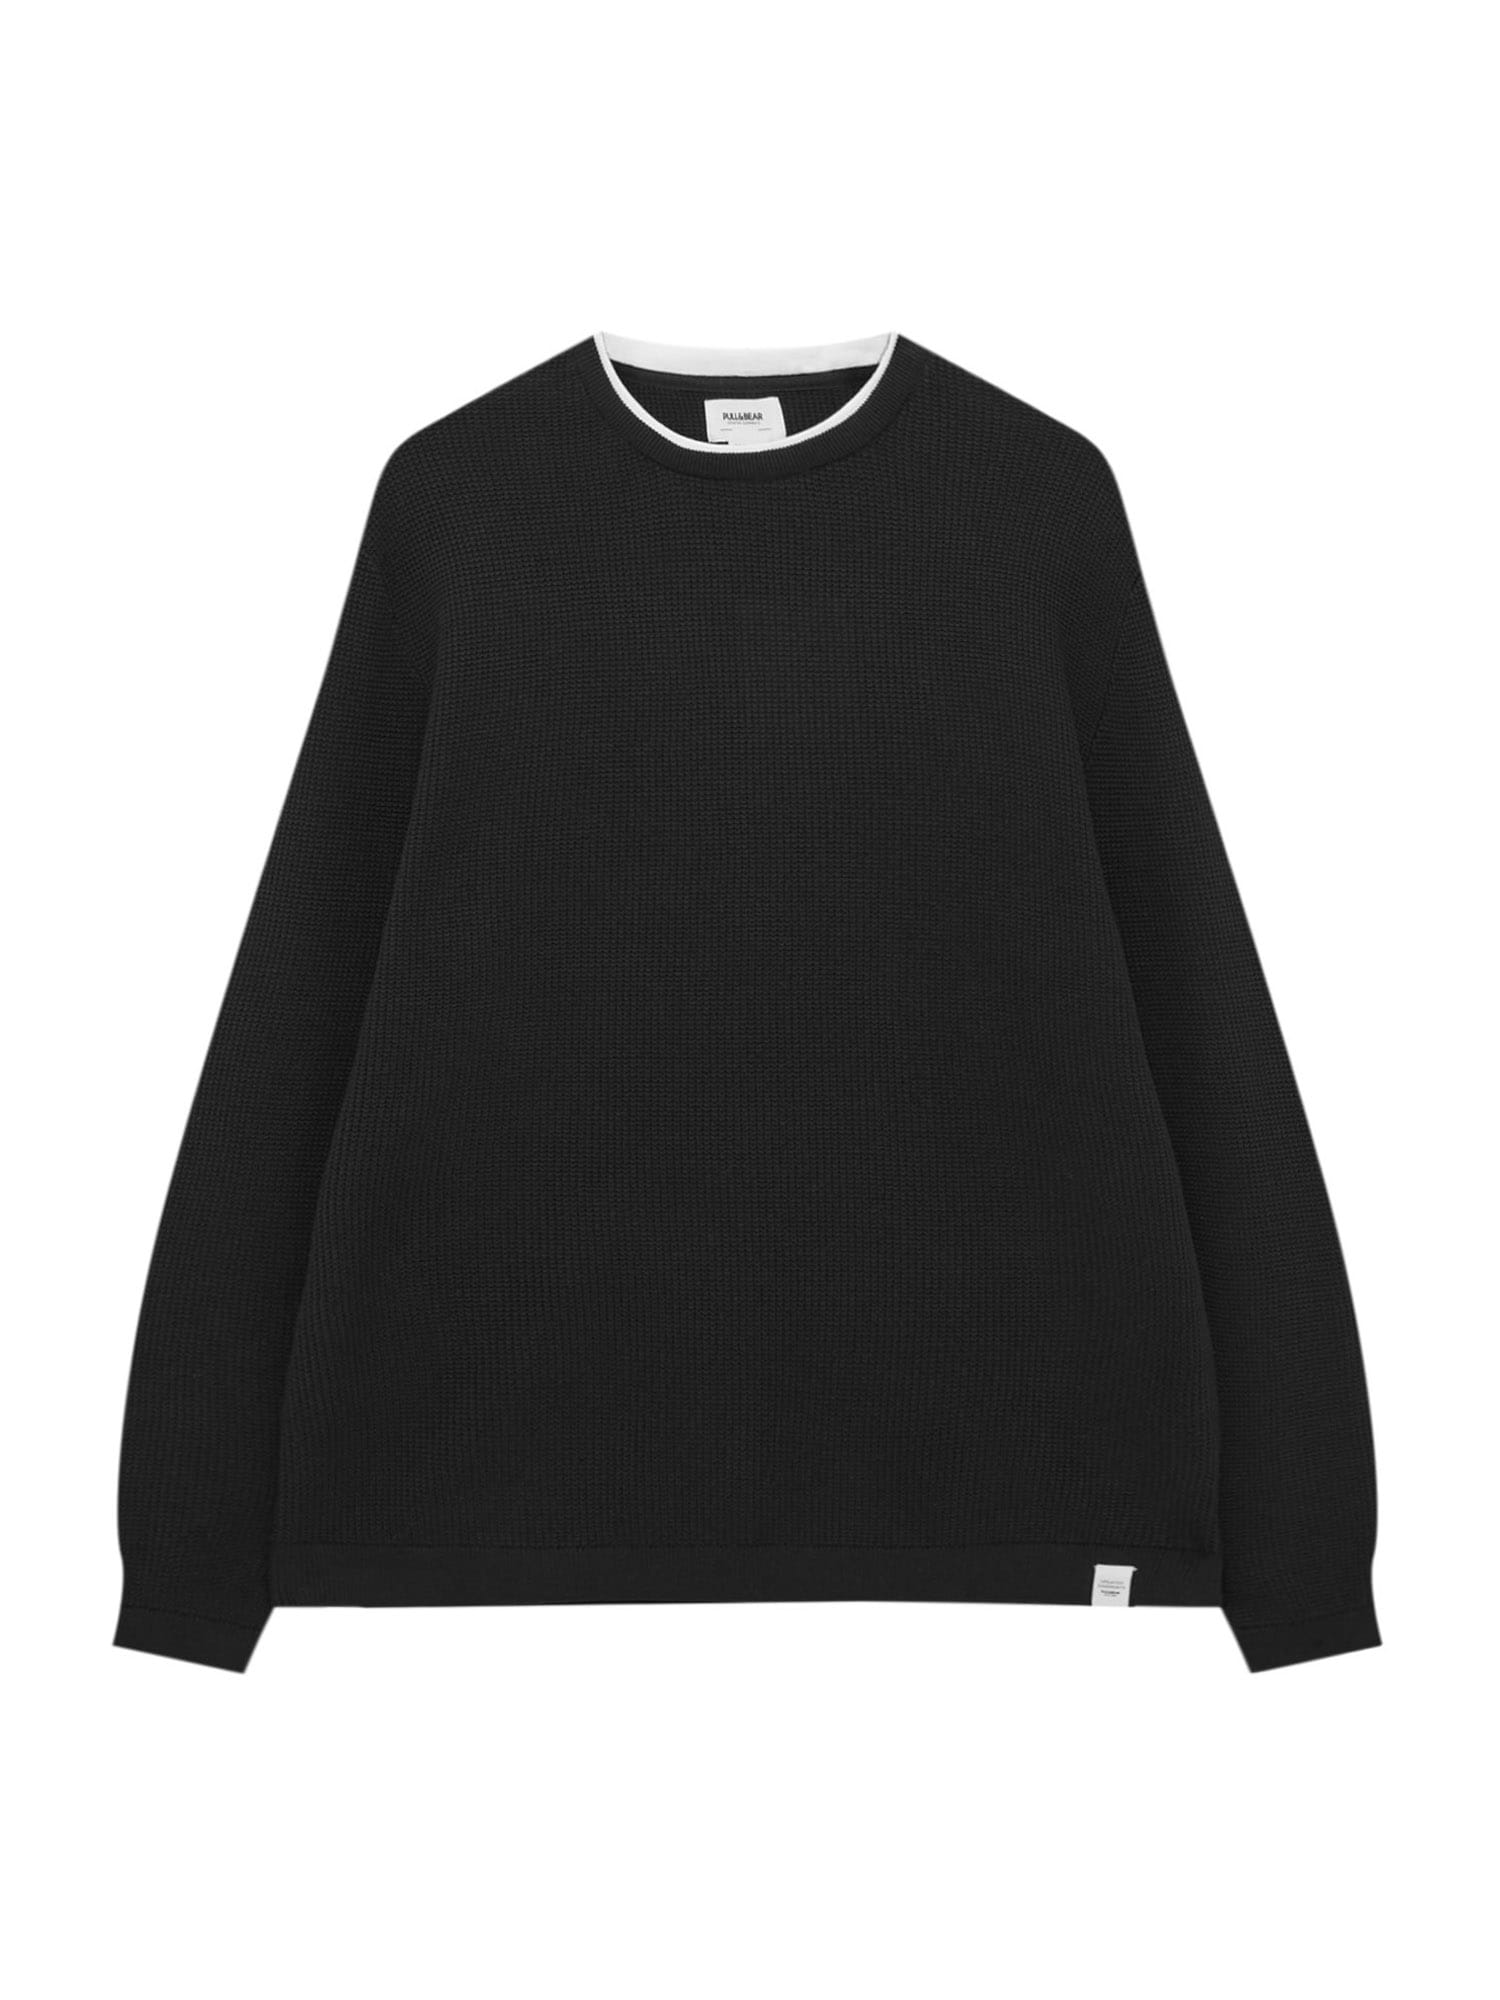 Pull&Bear Sweatshirt schwarz / wei